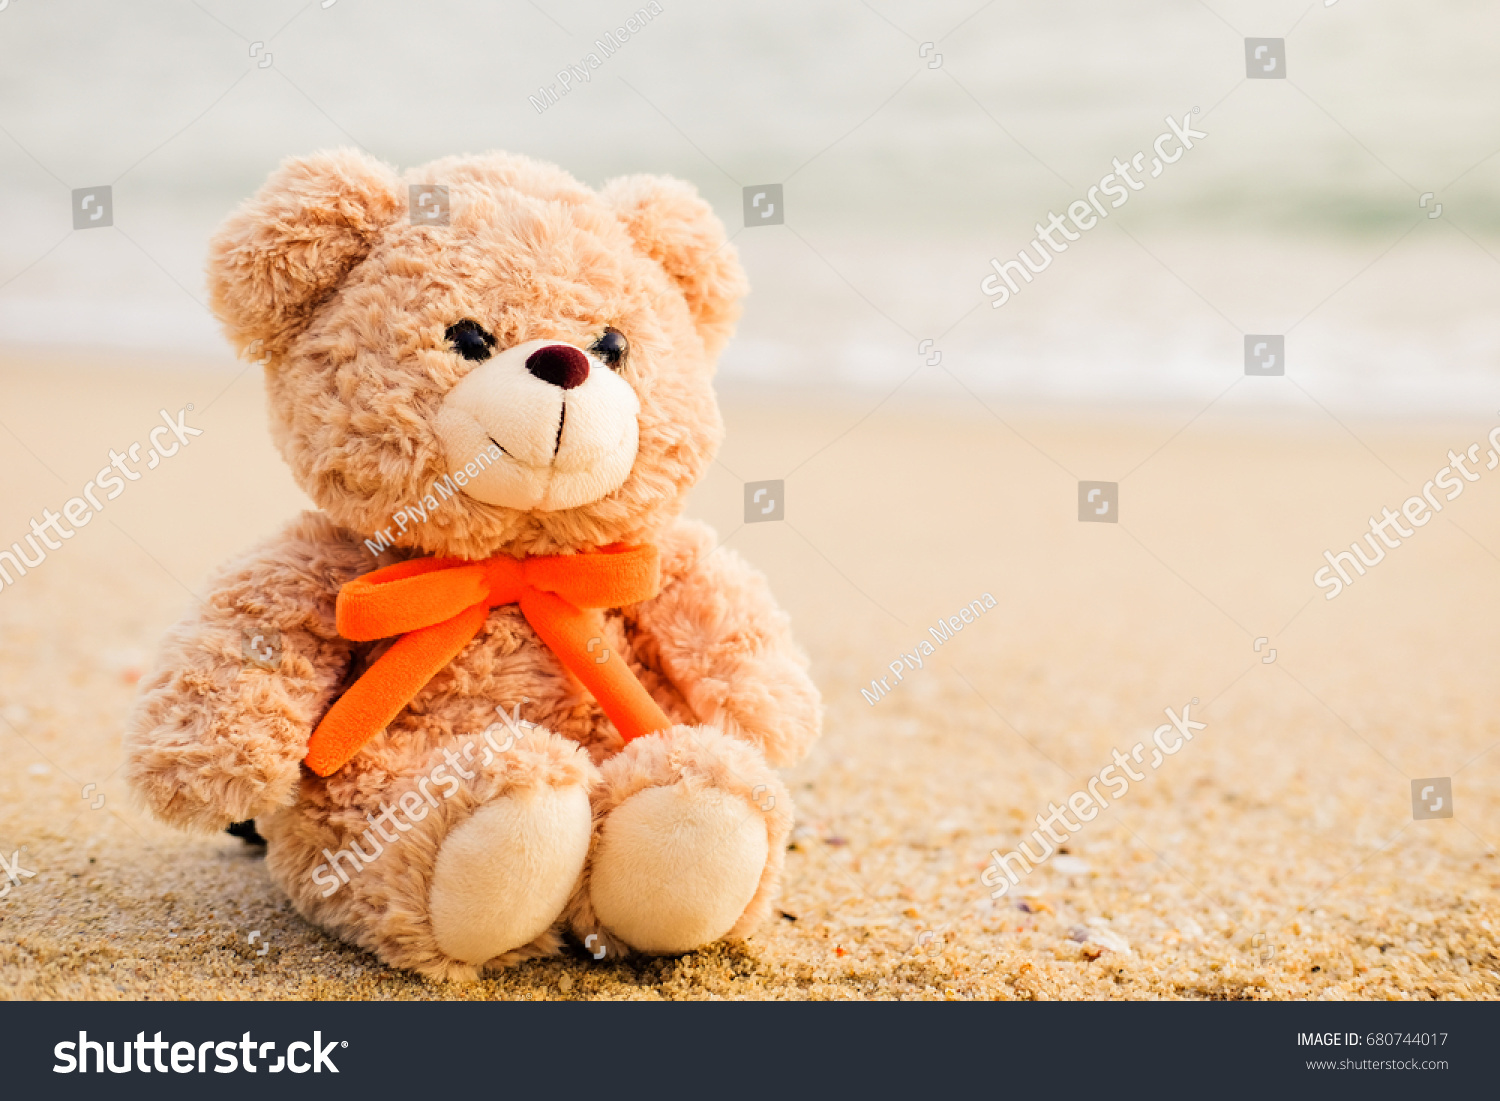 smiling teddy bear